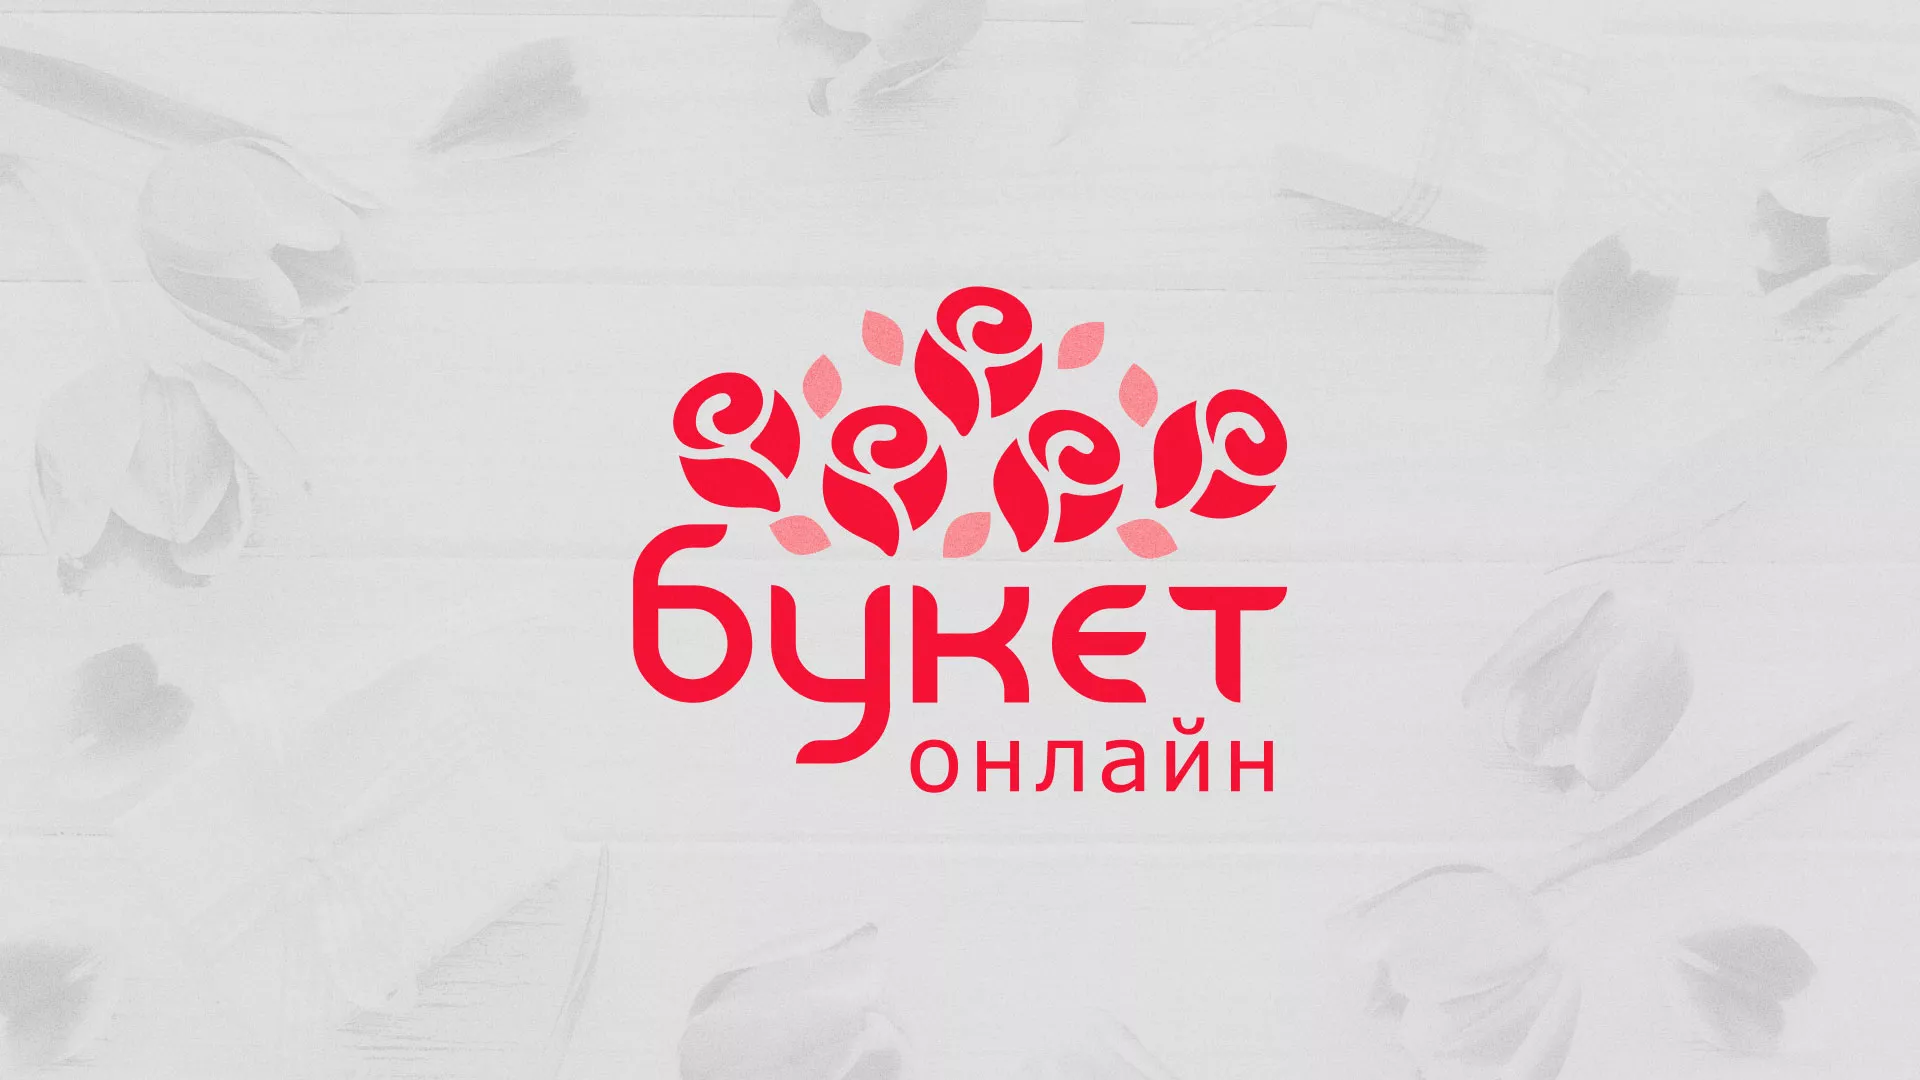 Создание интернет-магазина «Букет-онлайн» по цветам в Благовещенске